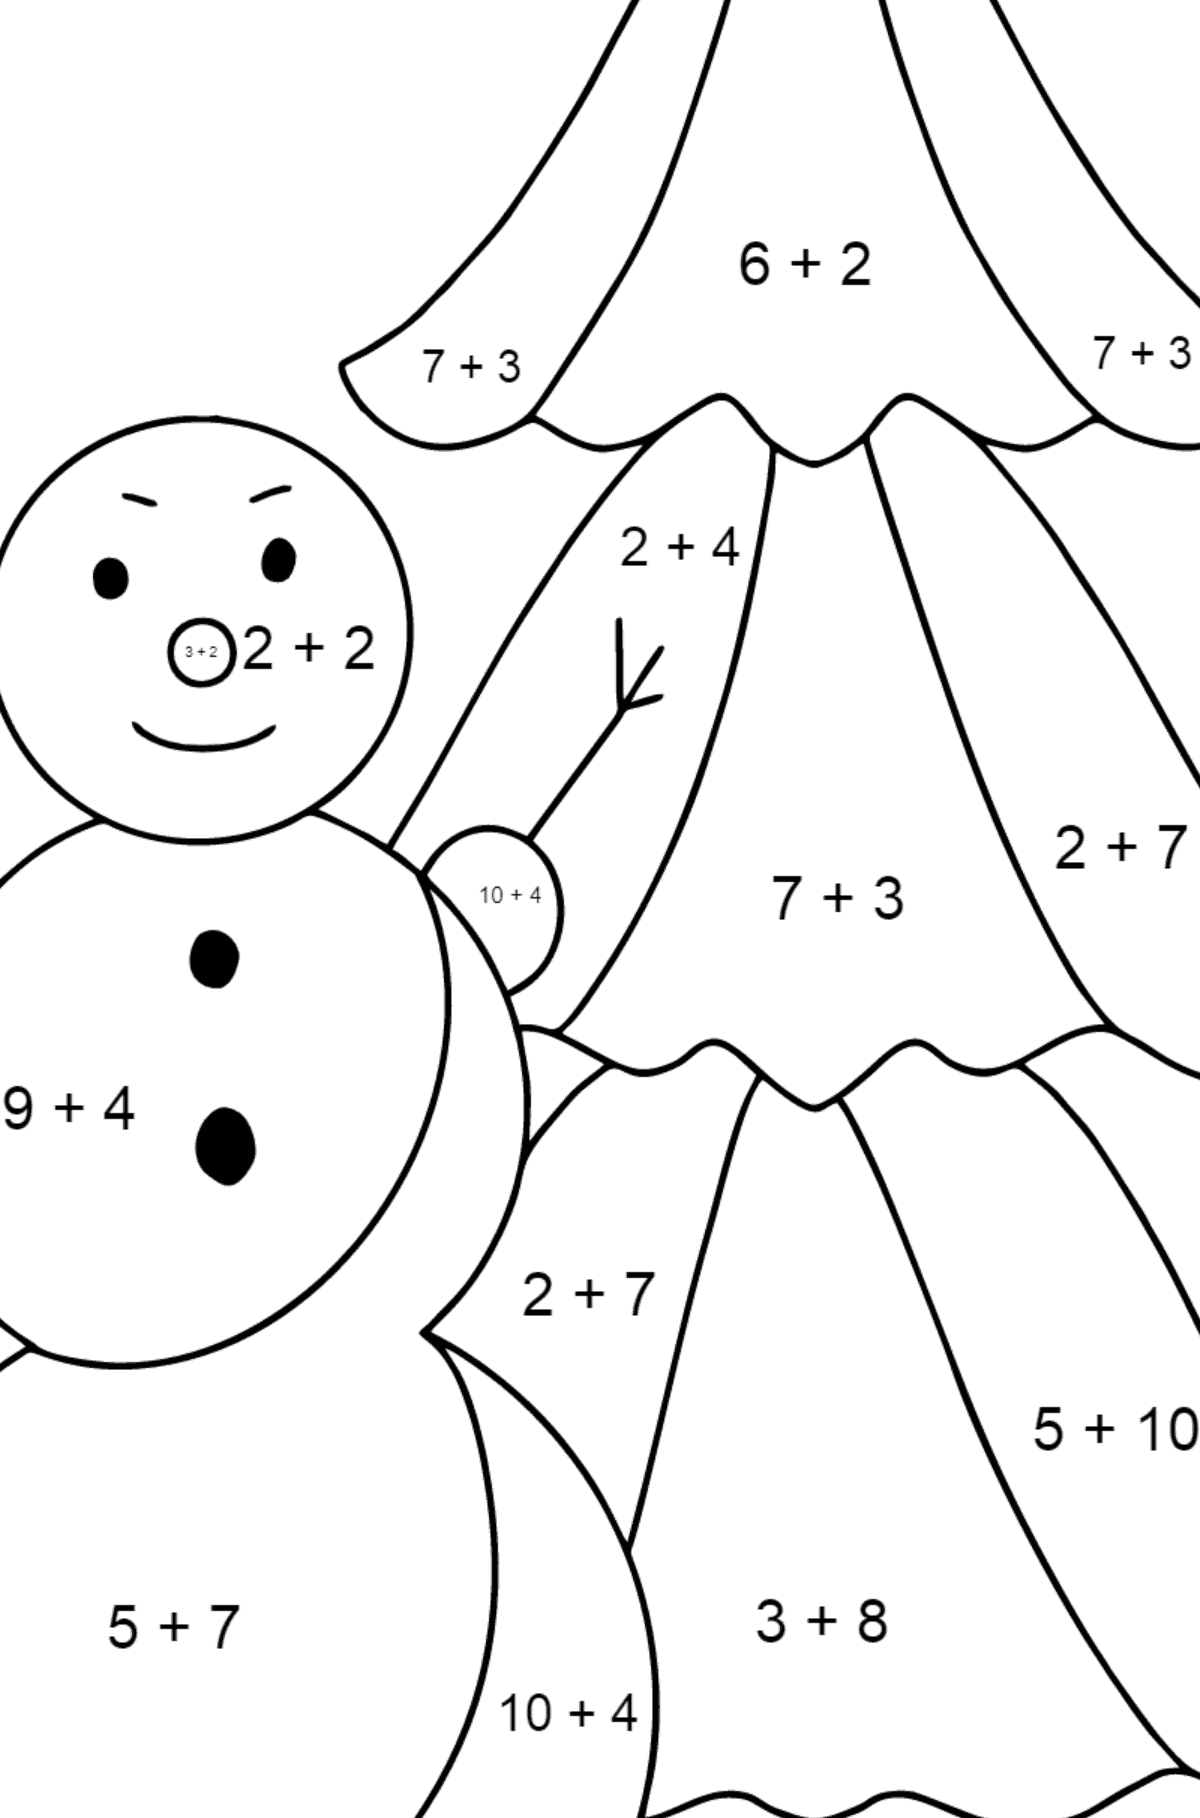 Desenho para colorir do boneco de neve para crianças - Colorindo com Matemática - Soma para Crianças